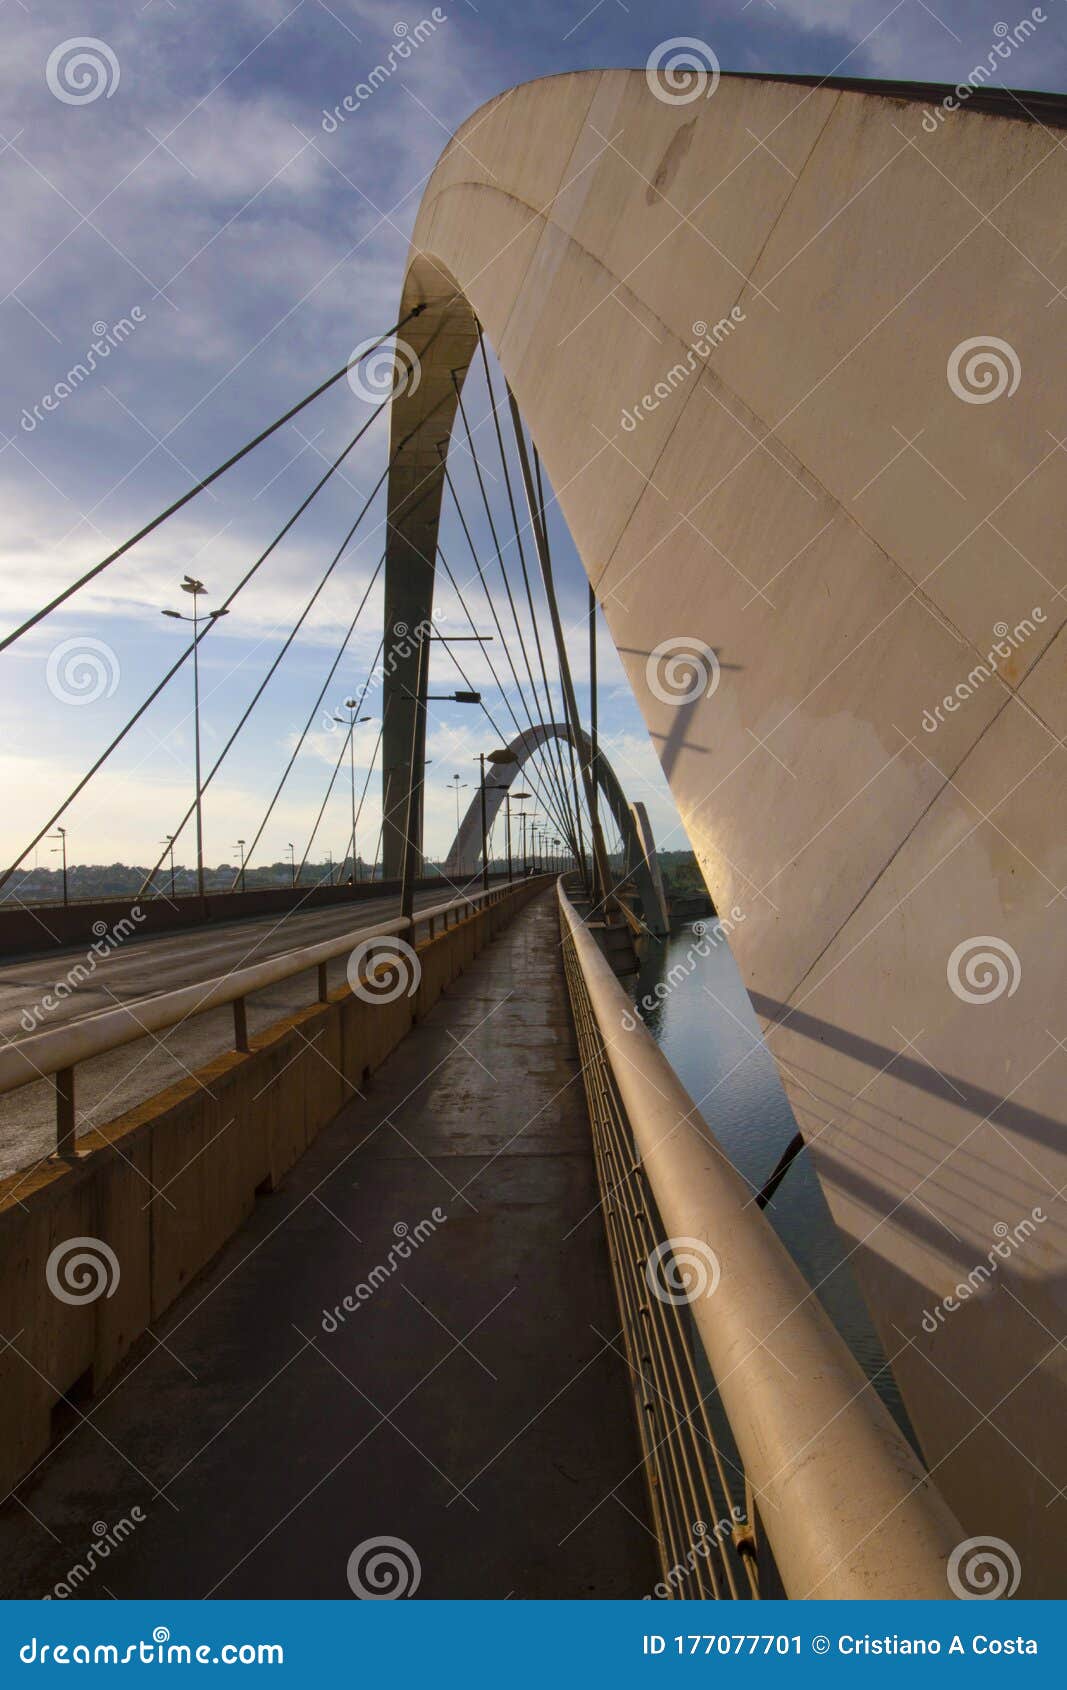 bridge of brasilia, capital of brazil